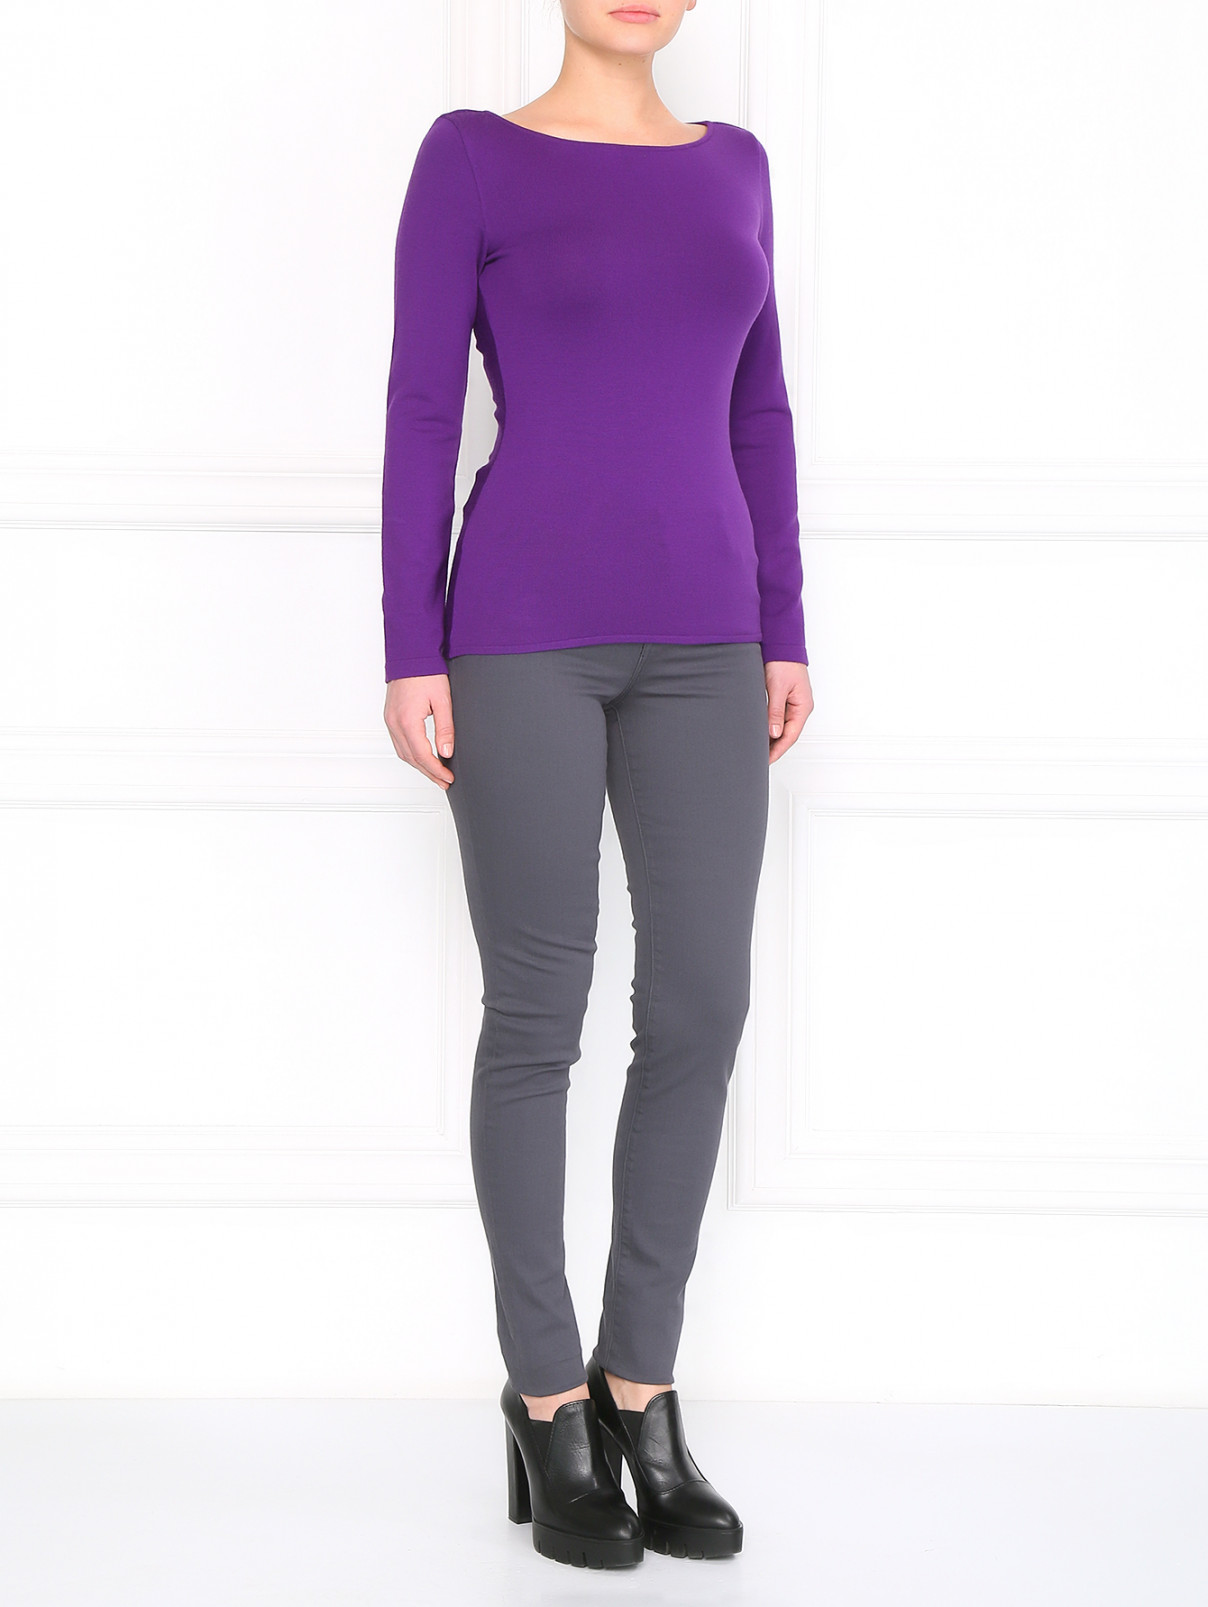 Джемпер с разрезами на спине Alberta Ferretti  –  Модель Общий вид  – Цвет:  Фиолетовый